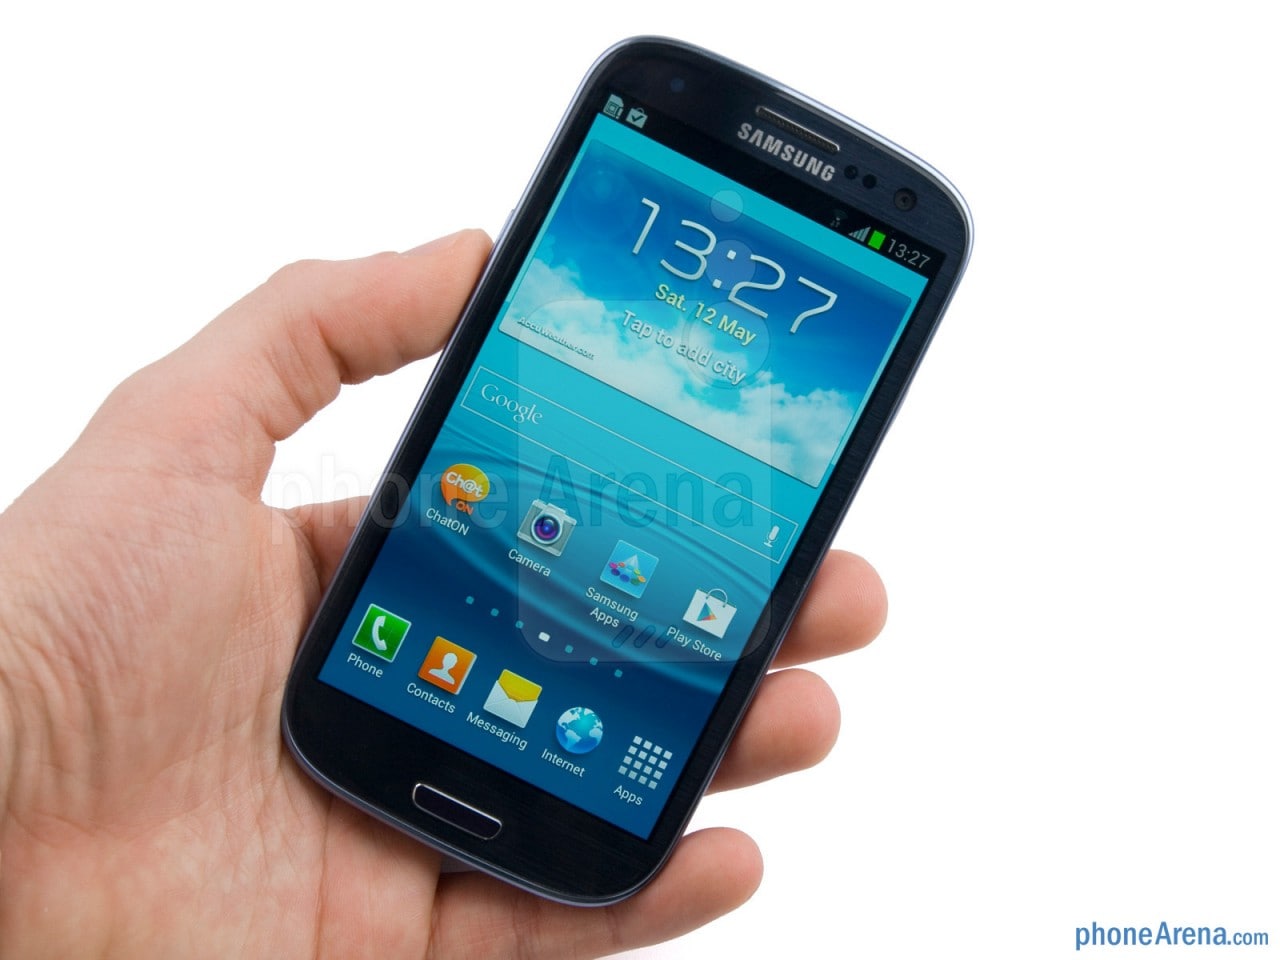 Incredibili Galaxy S III ed S II: Android 12 grazie alla LineageOS non ufficiale (aggiornato)